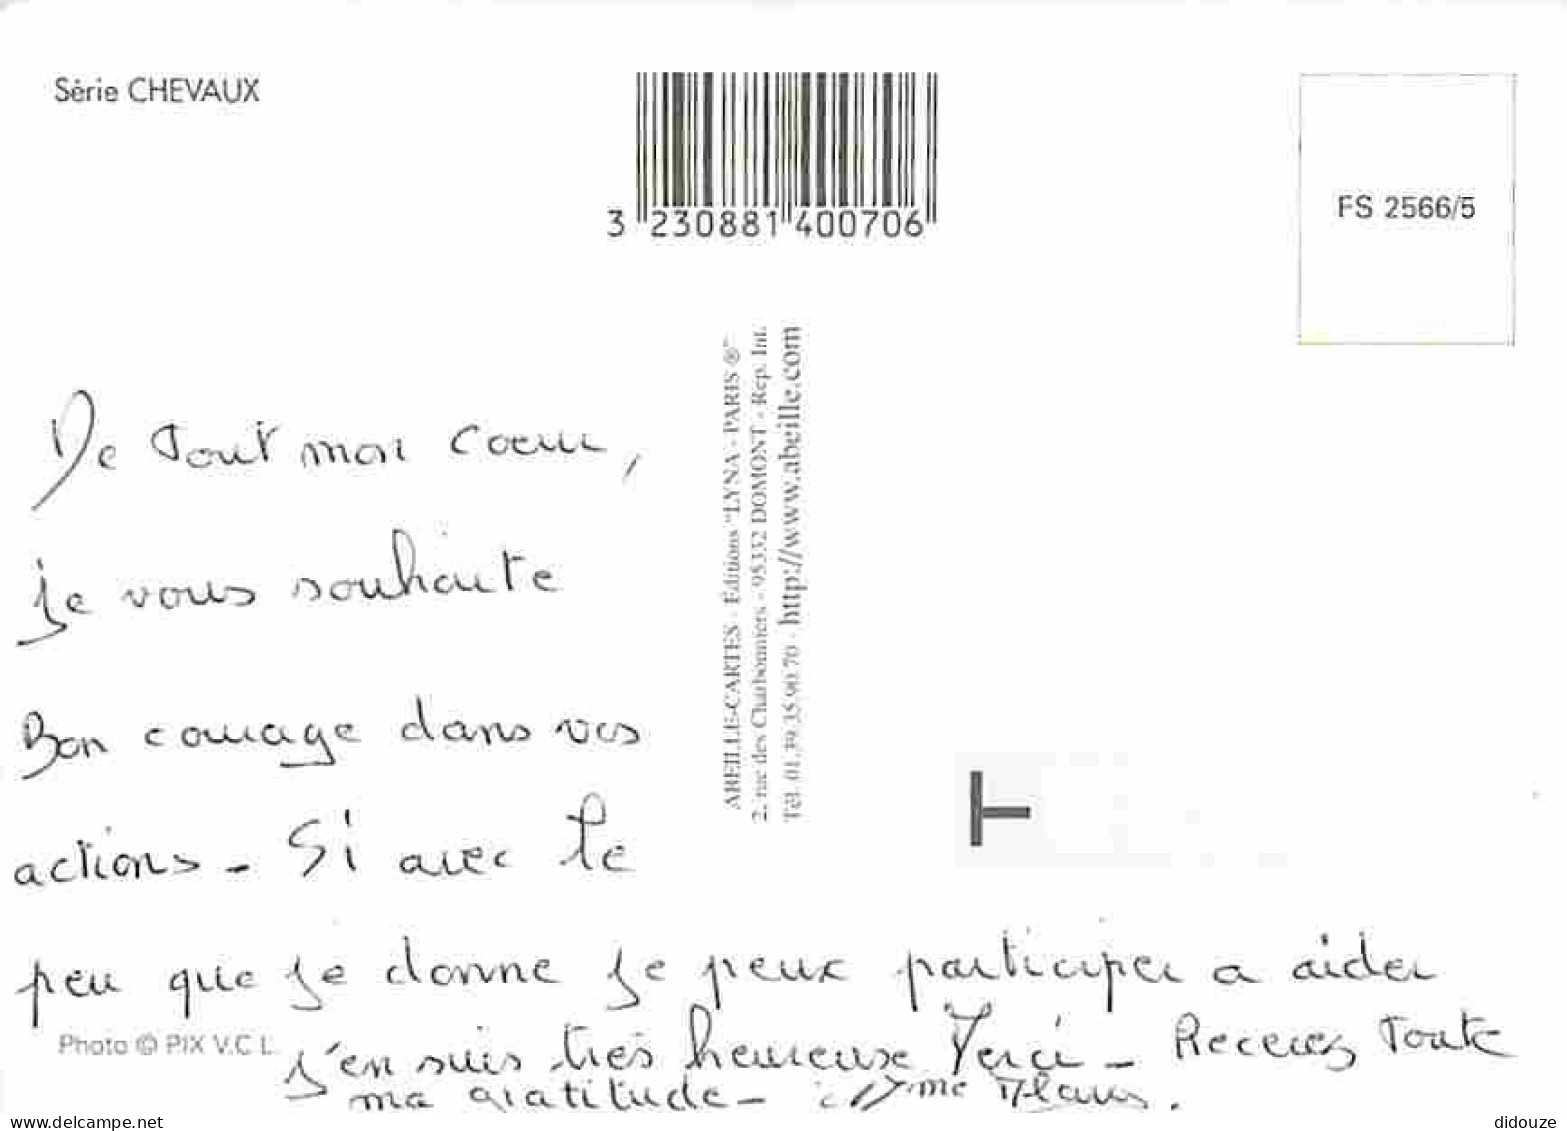 Animaux - Chevaux - Jument Et Son Poulain - Voir Scans Recto Verso  - Pferde